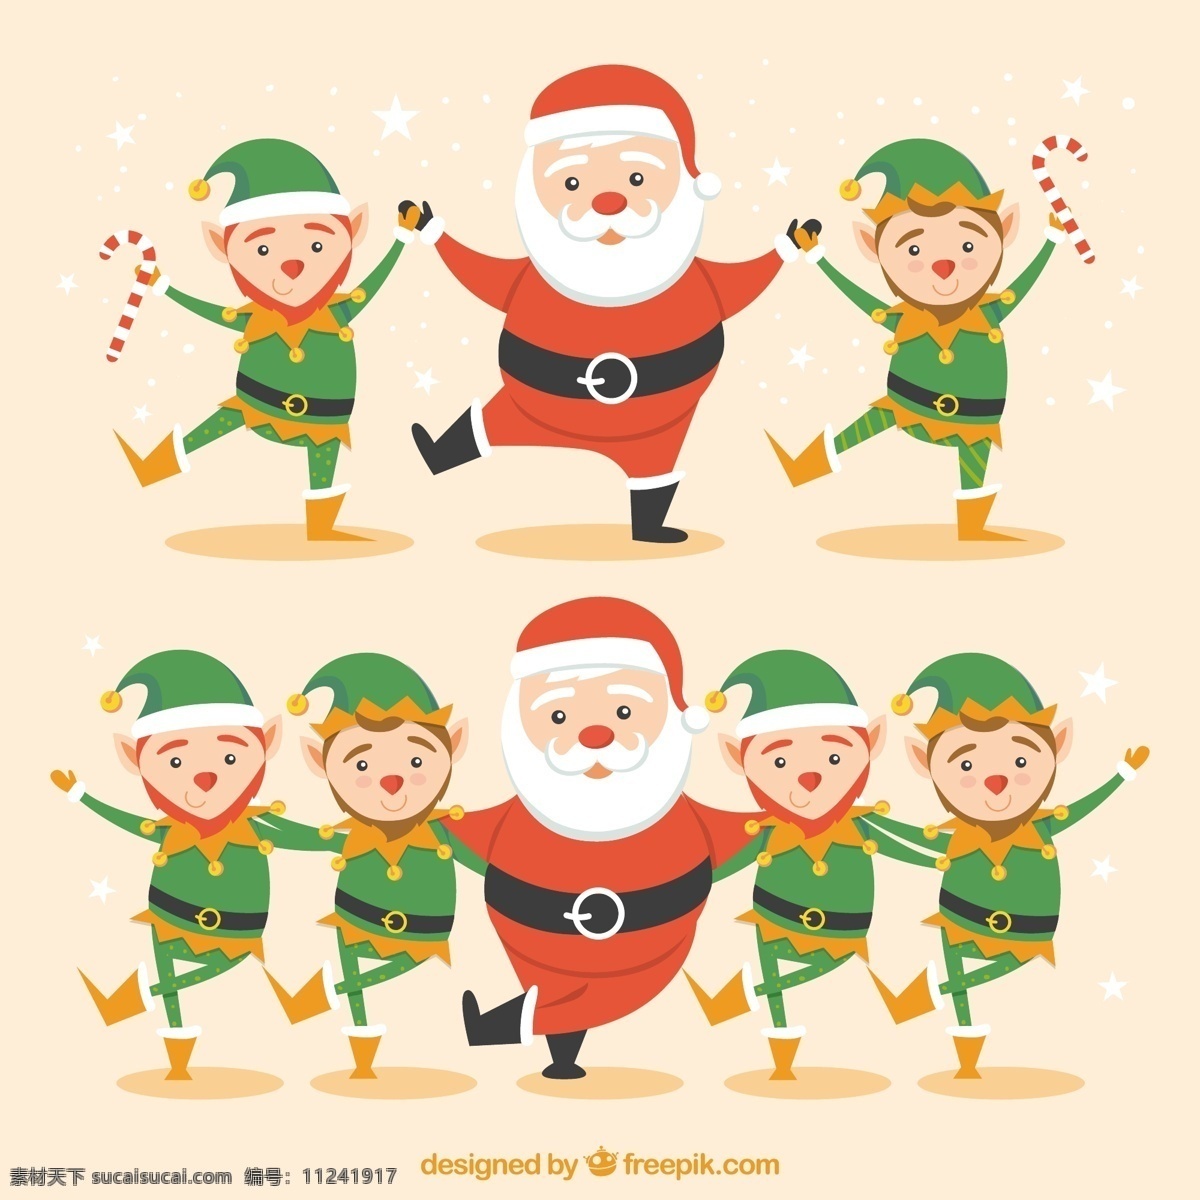 圣 塔克 劳斯 精灵 舞蹈 圣诞节 圣诞快乐 卡通 冬天快乐 克劳斯 性格 圣诞老人 庆祝 节日 好玩 有趣 卡通人物 节日快乐 跳舞 人物 白色